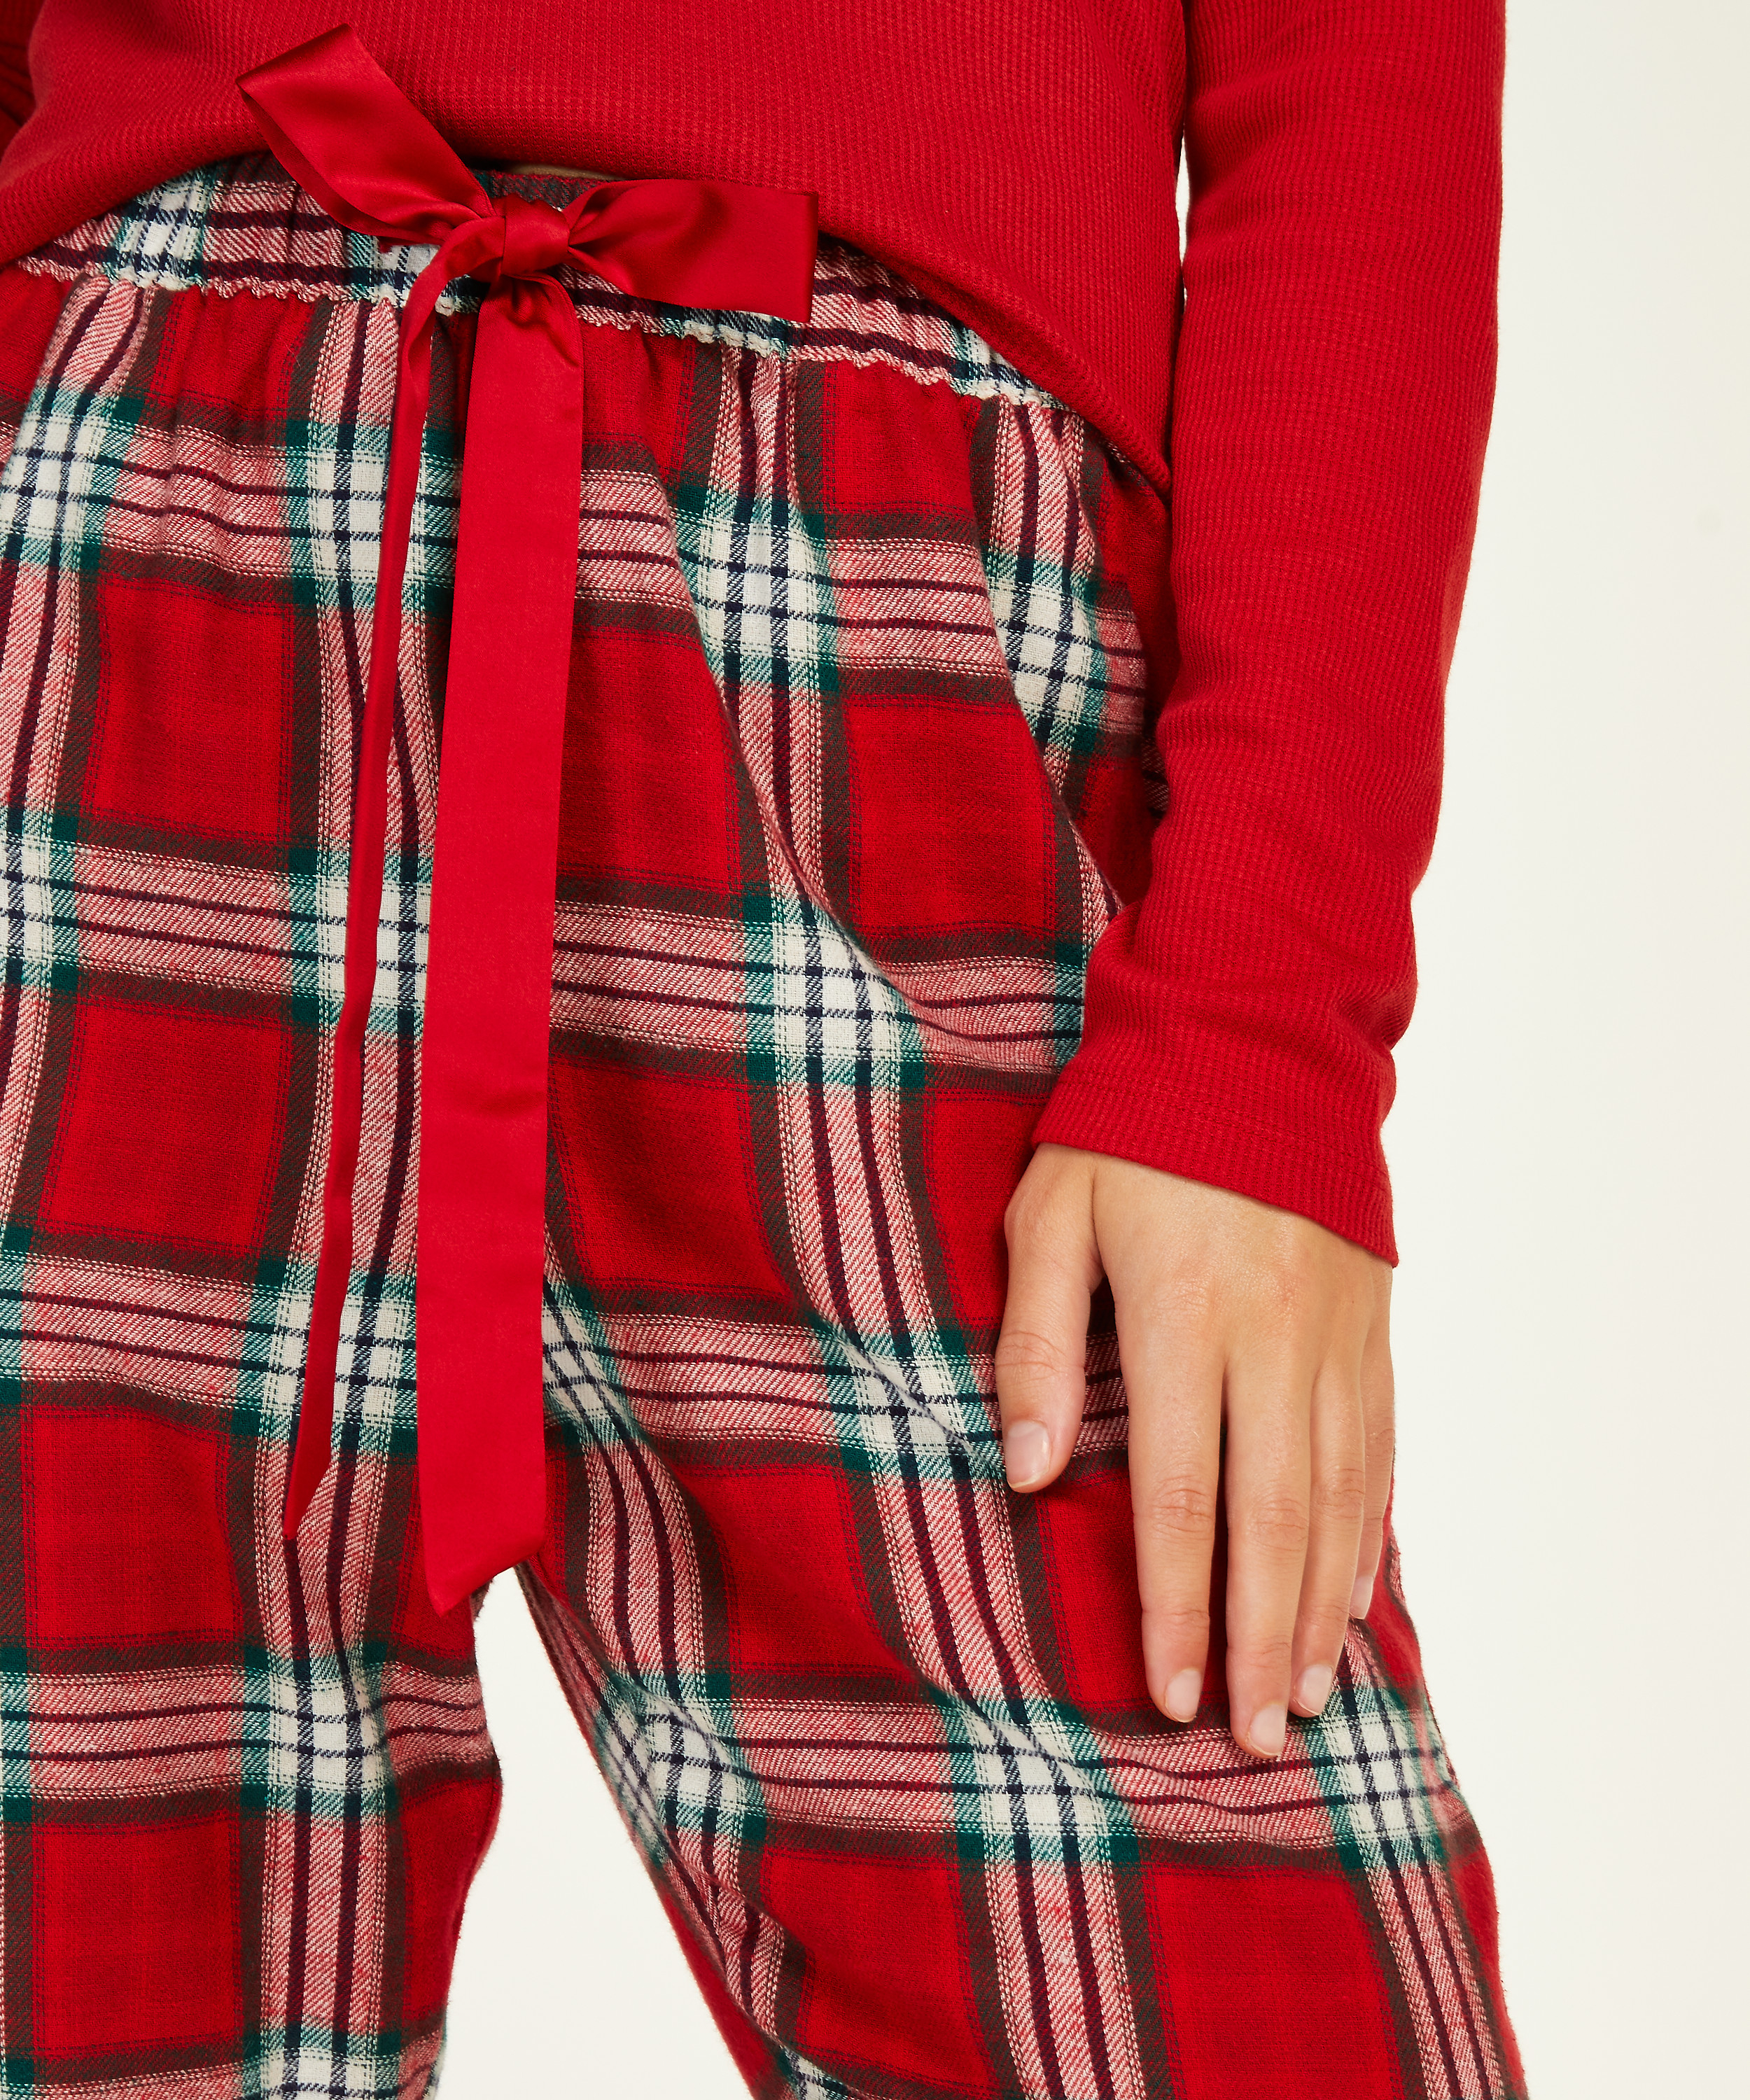 Petite Twill Check Pyjama pants, röd, main